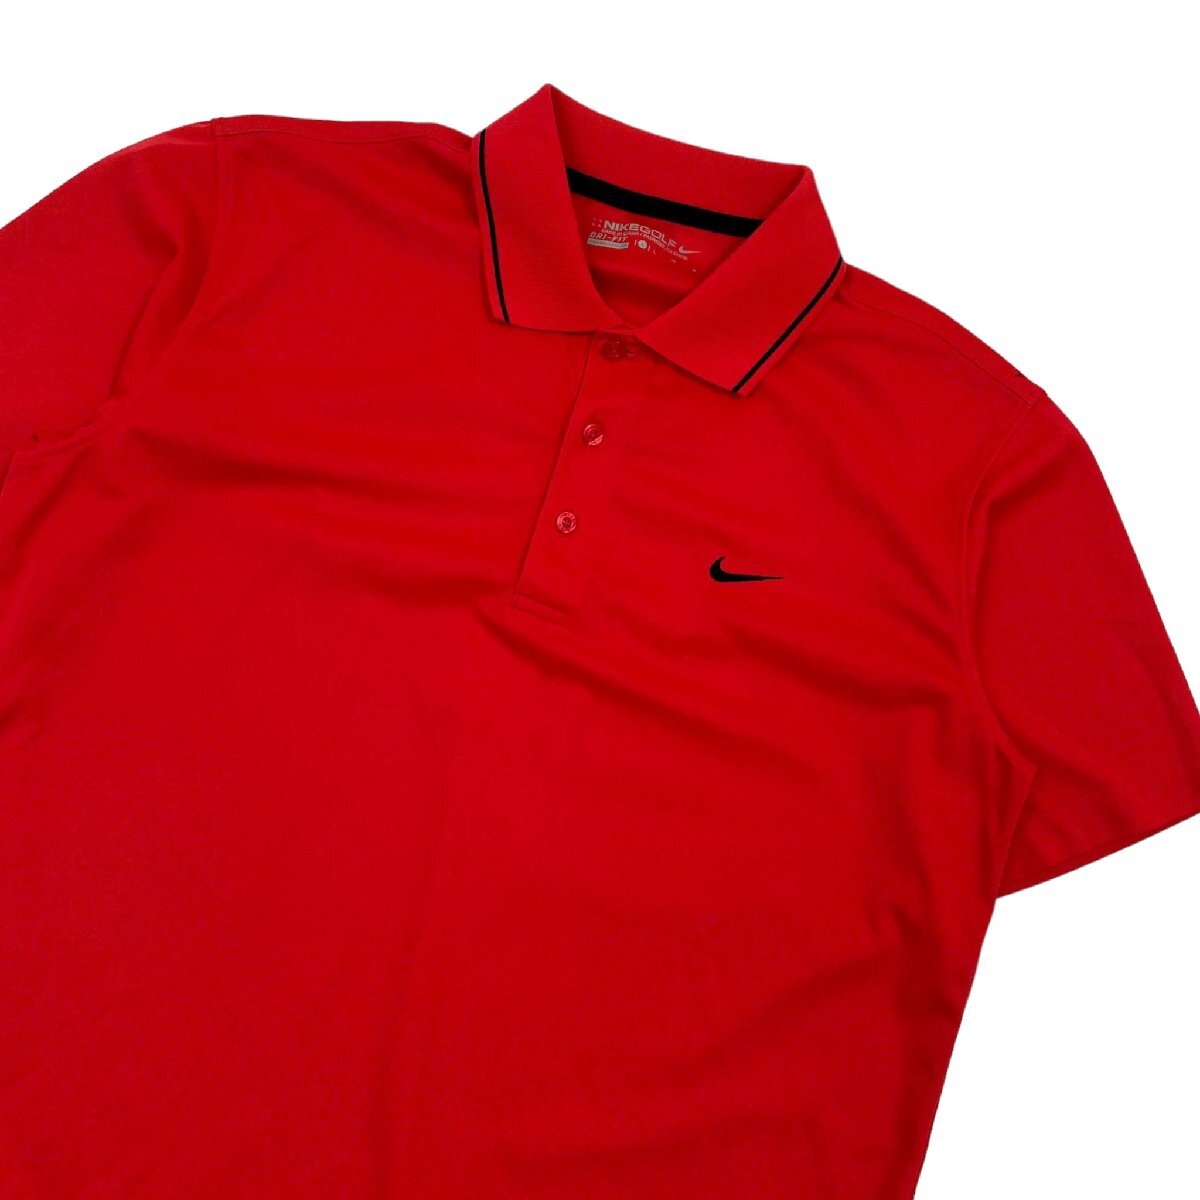 NIKE GOLF ナイキ ゴルフ ドライ ストレッチ 半袖 ポロシャツ Lサイズ/レッド 赤/メンズ スポーツ_画像1